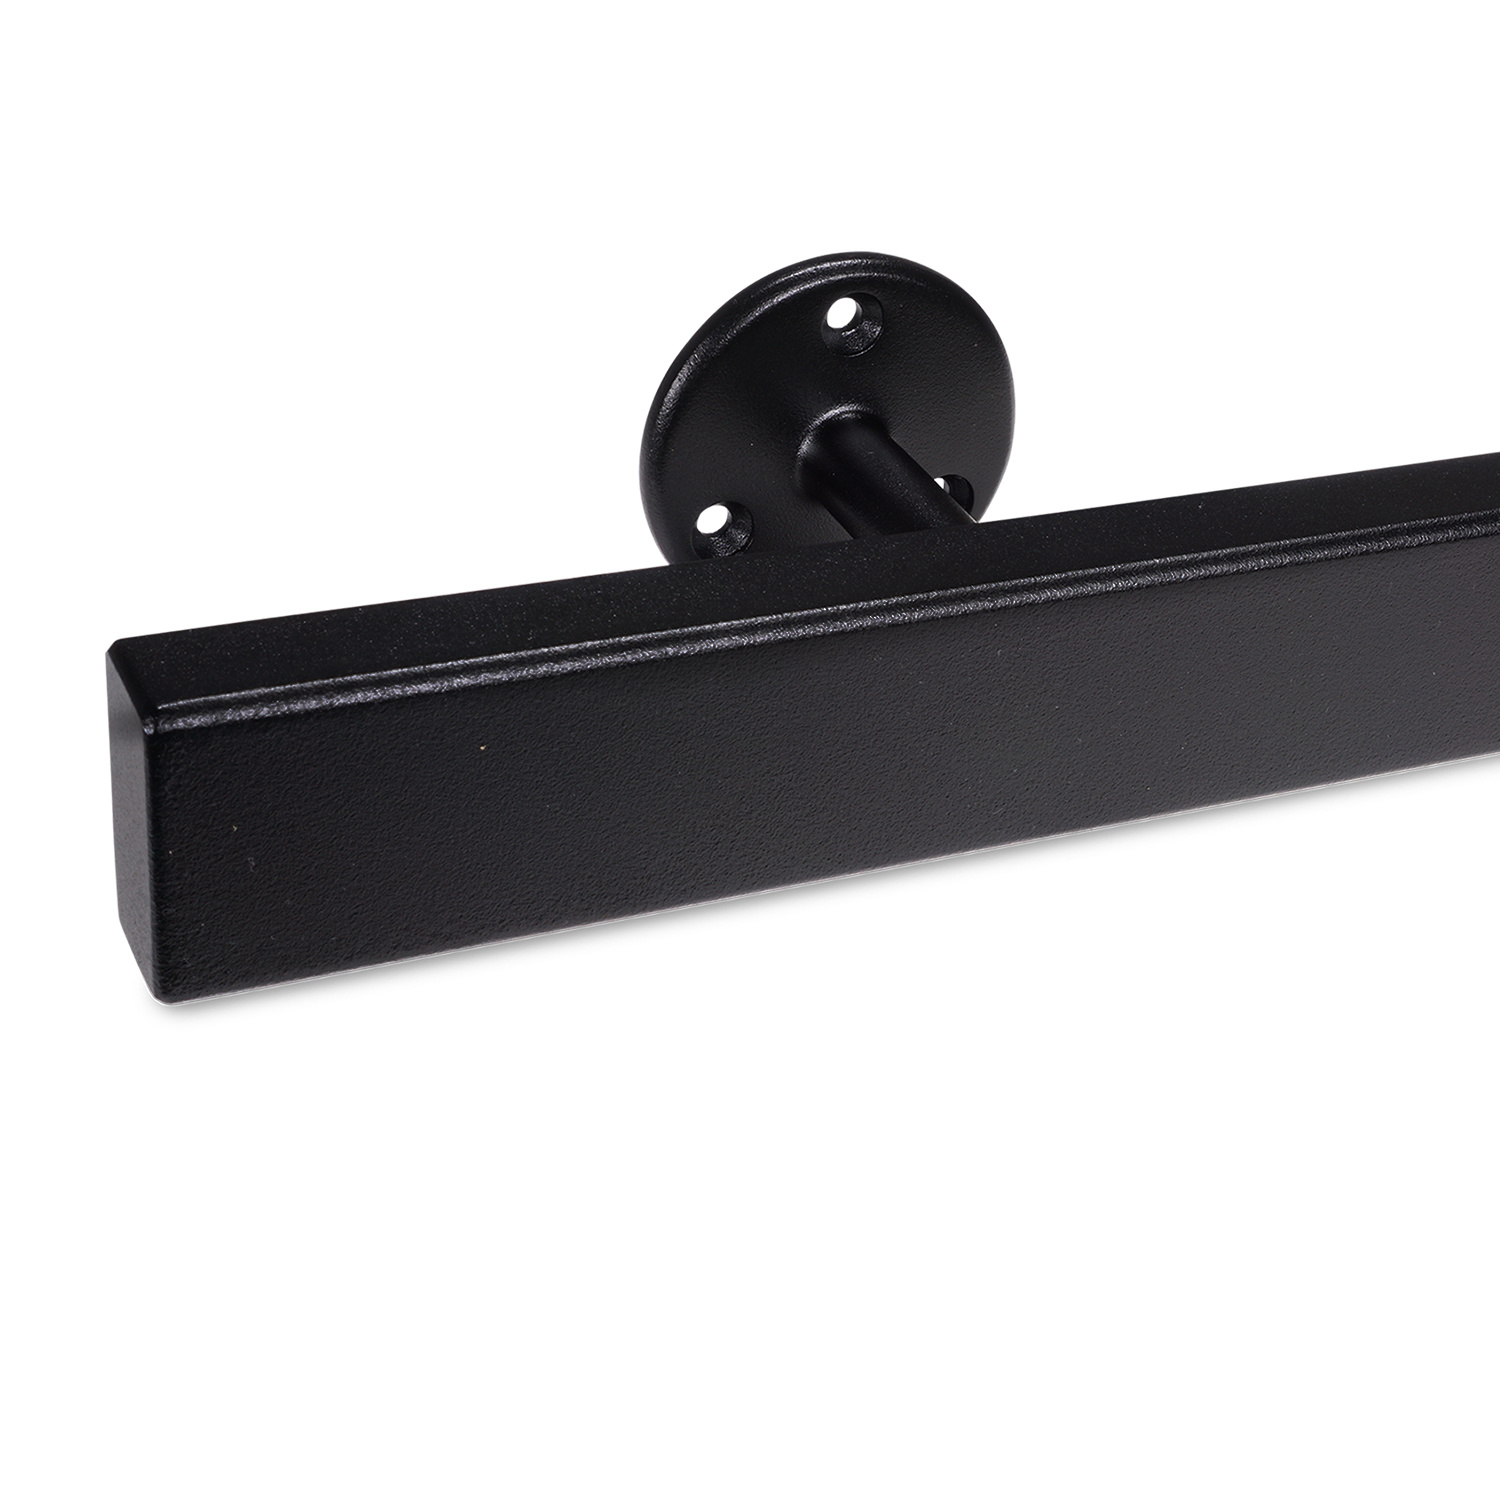  Handlauf schwarz beschichtet viereckig 40x20 Modell 4 - Rechteckige Treppengeländer - Treppenhandlauf mit schwarzer Pulverbeschichtung RAL 9005